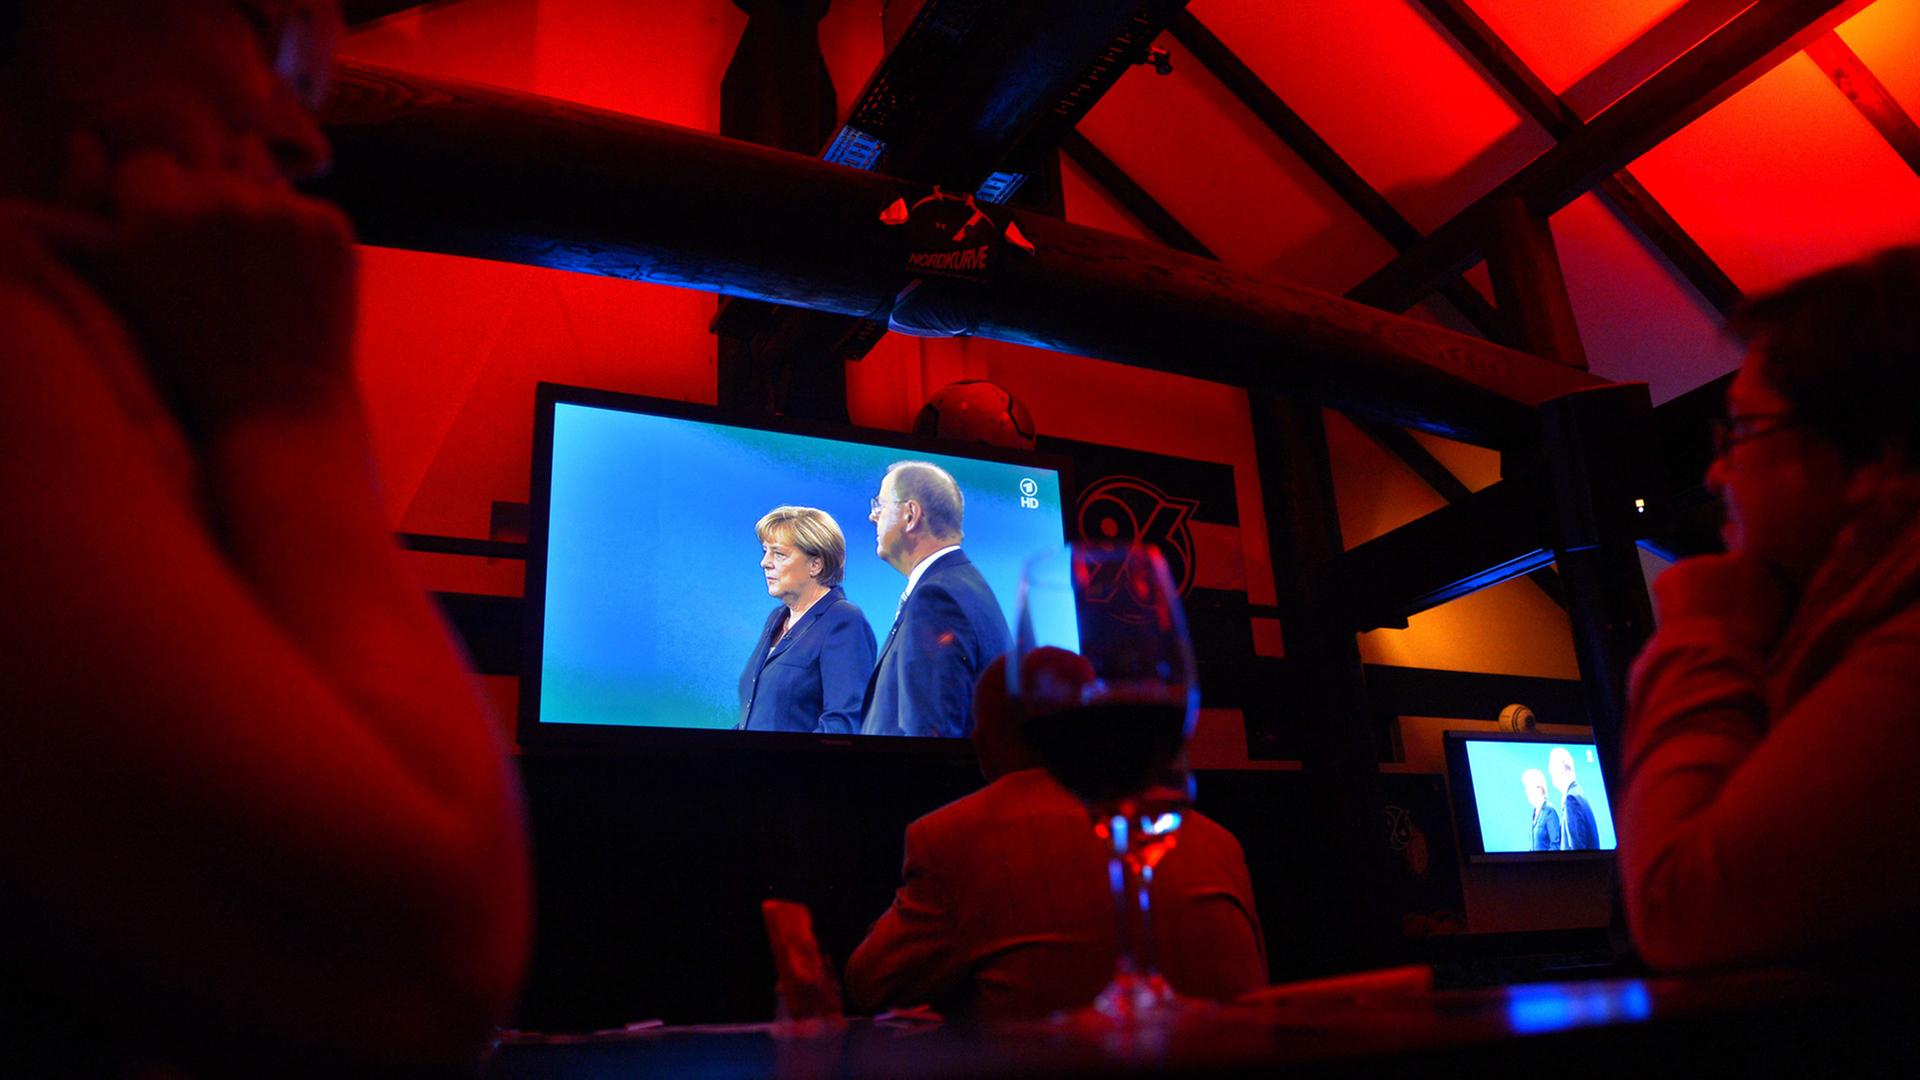 Menschen verfolgen auf einer SPD-Wahlkampfveranstaltung in Hannover das Fernsehduell zwischen Bundeskanzlerin Angela Merkel, CDU, und dem Spitzenkandidaten Peer Steinbrück, SPD, auf einem Display; Aufnahme vom September 2013